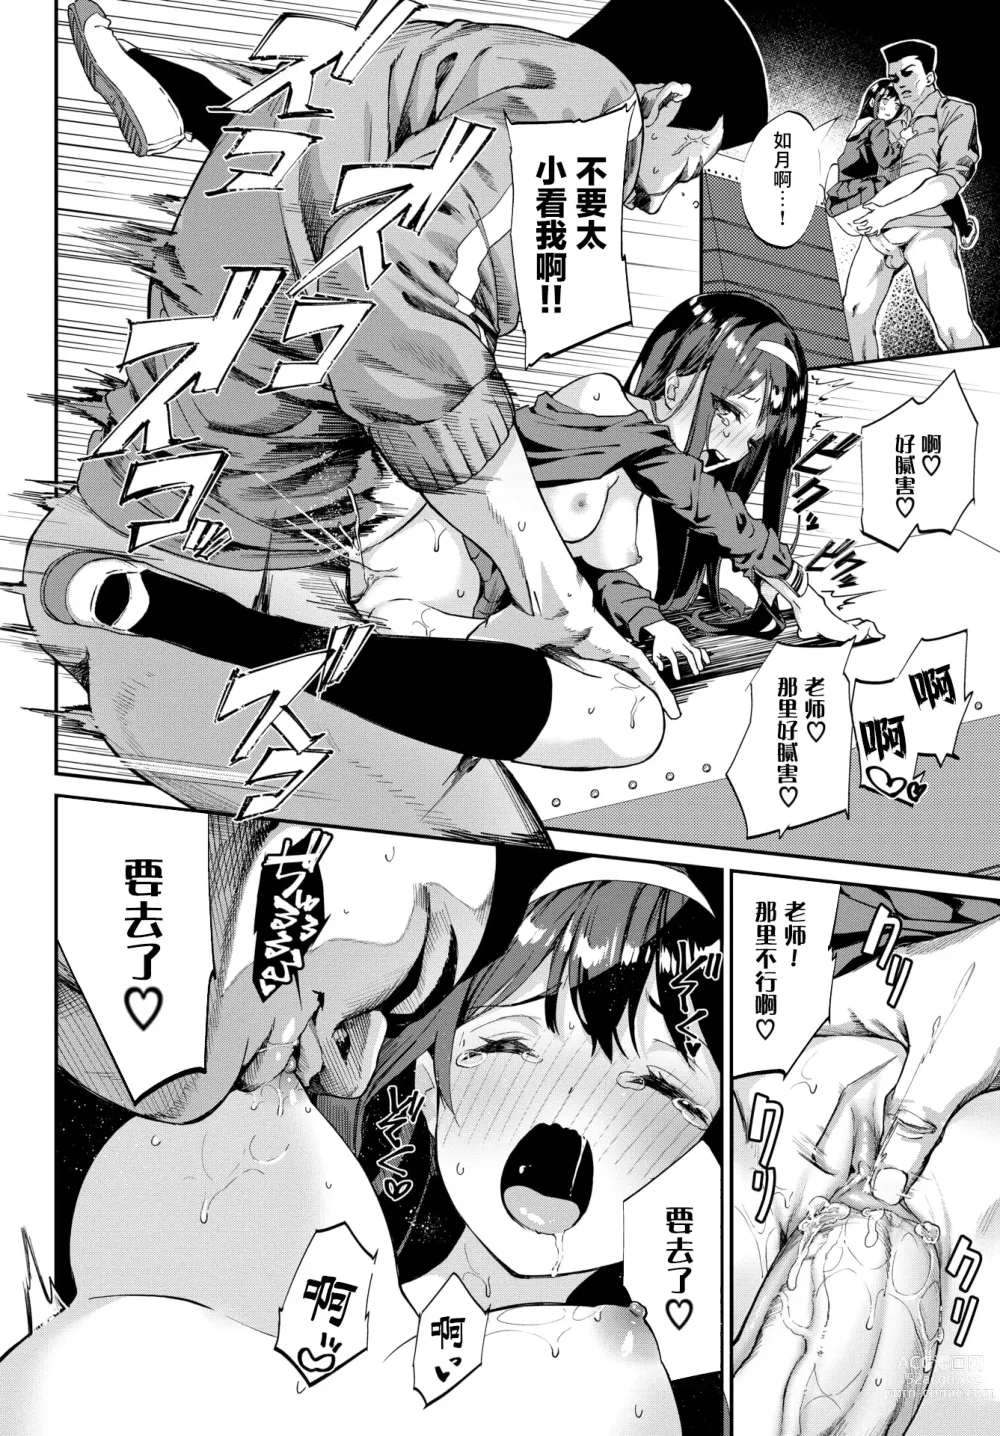 Page 23 of manga Funny Fuck!